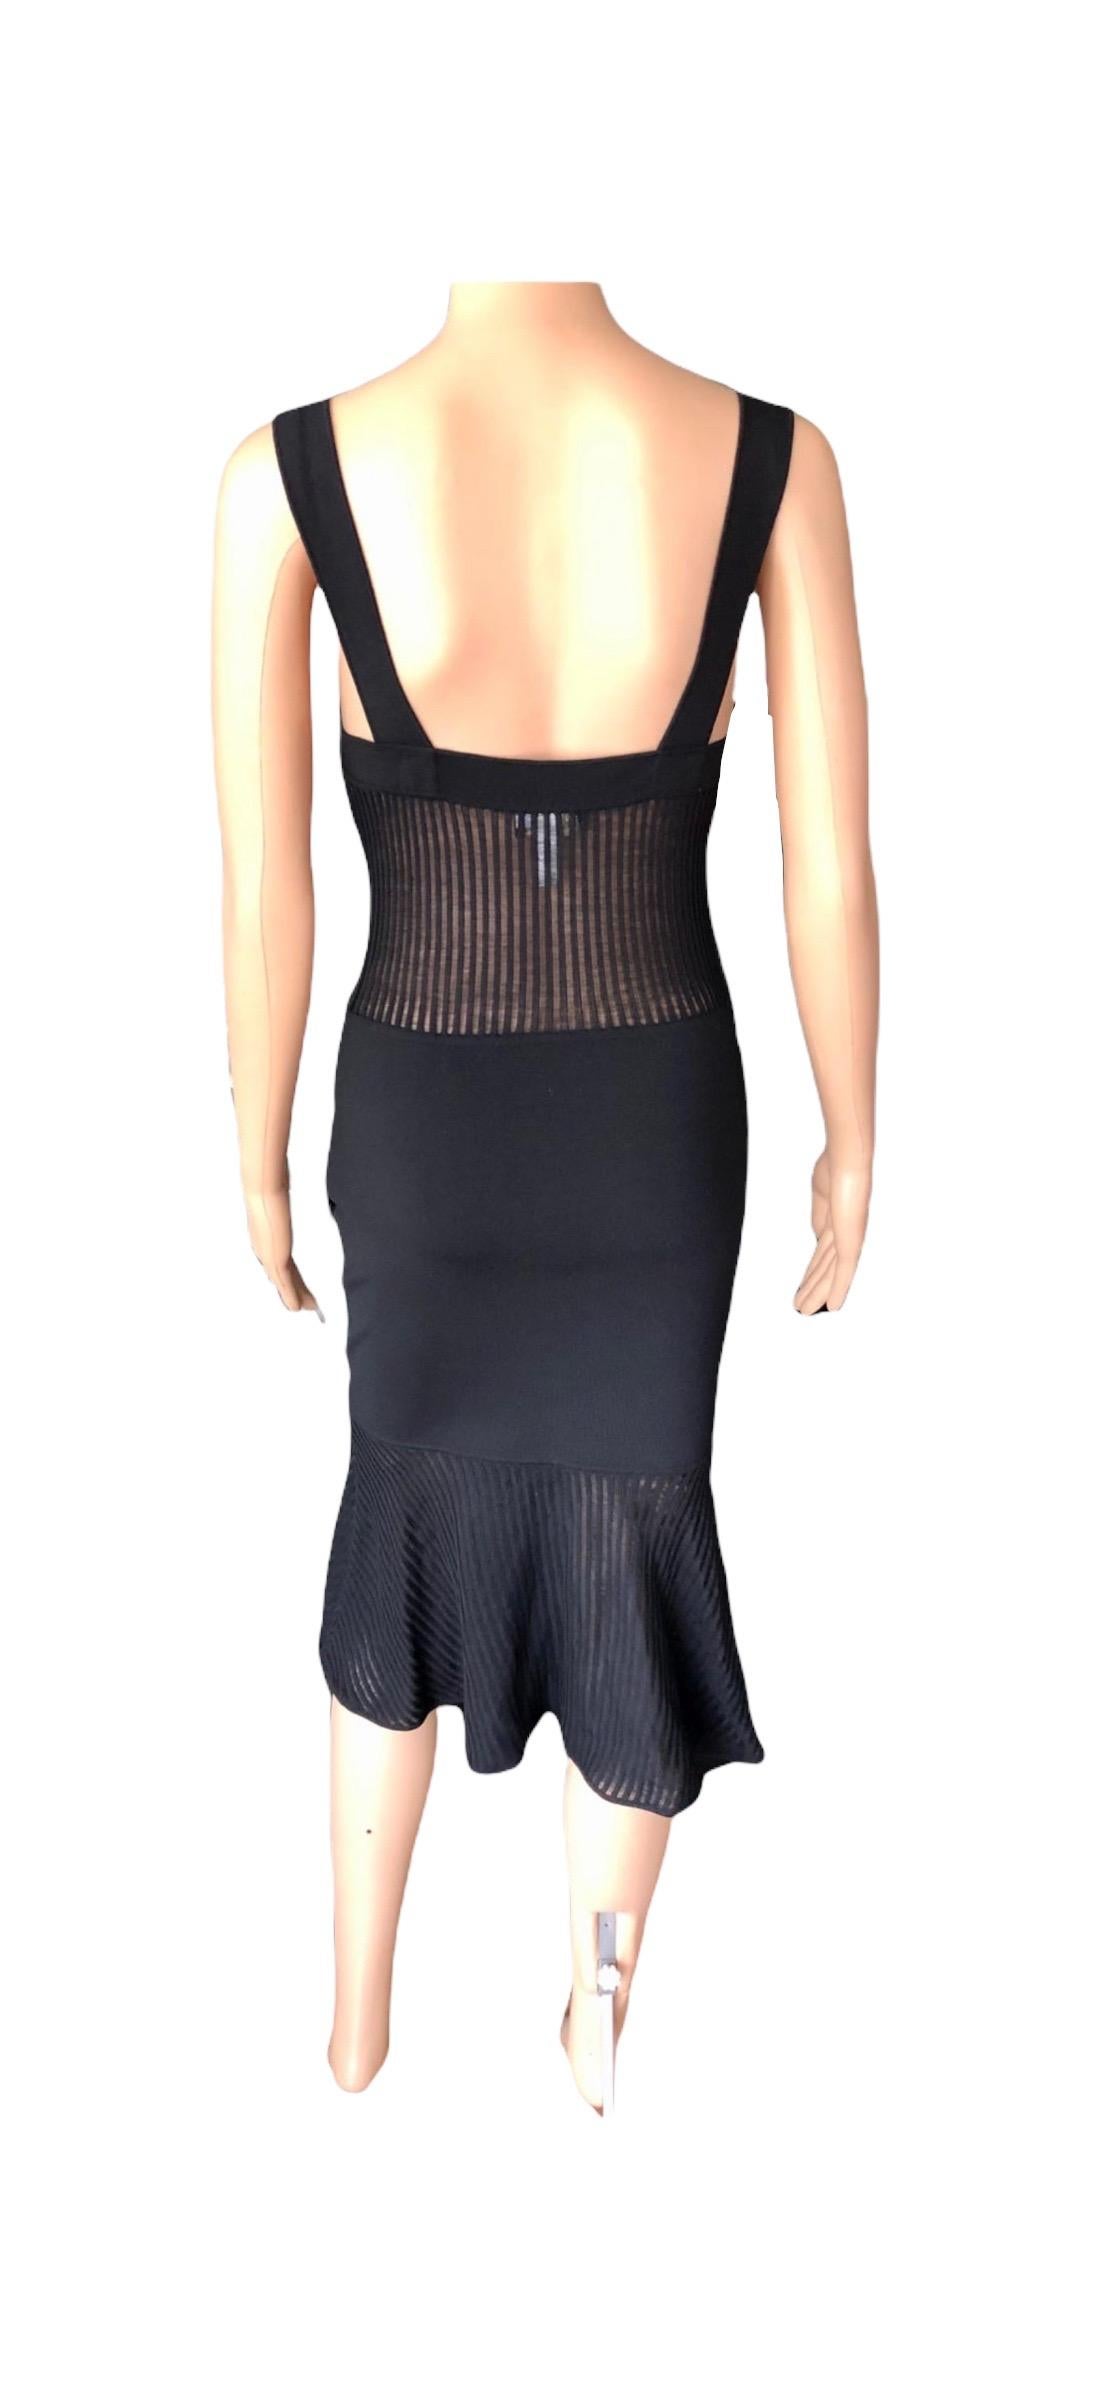 Gianni Versace 1990’s Vintage Sheer Knit Black Dress For Sale 7